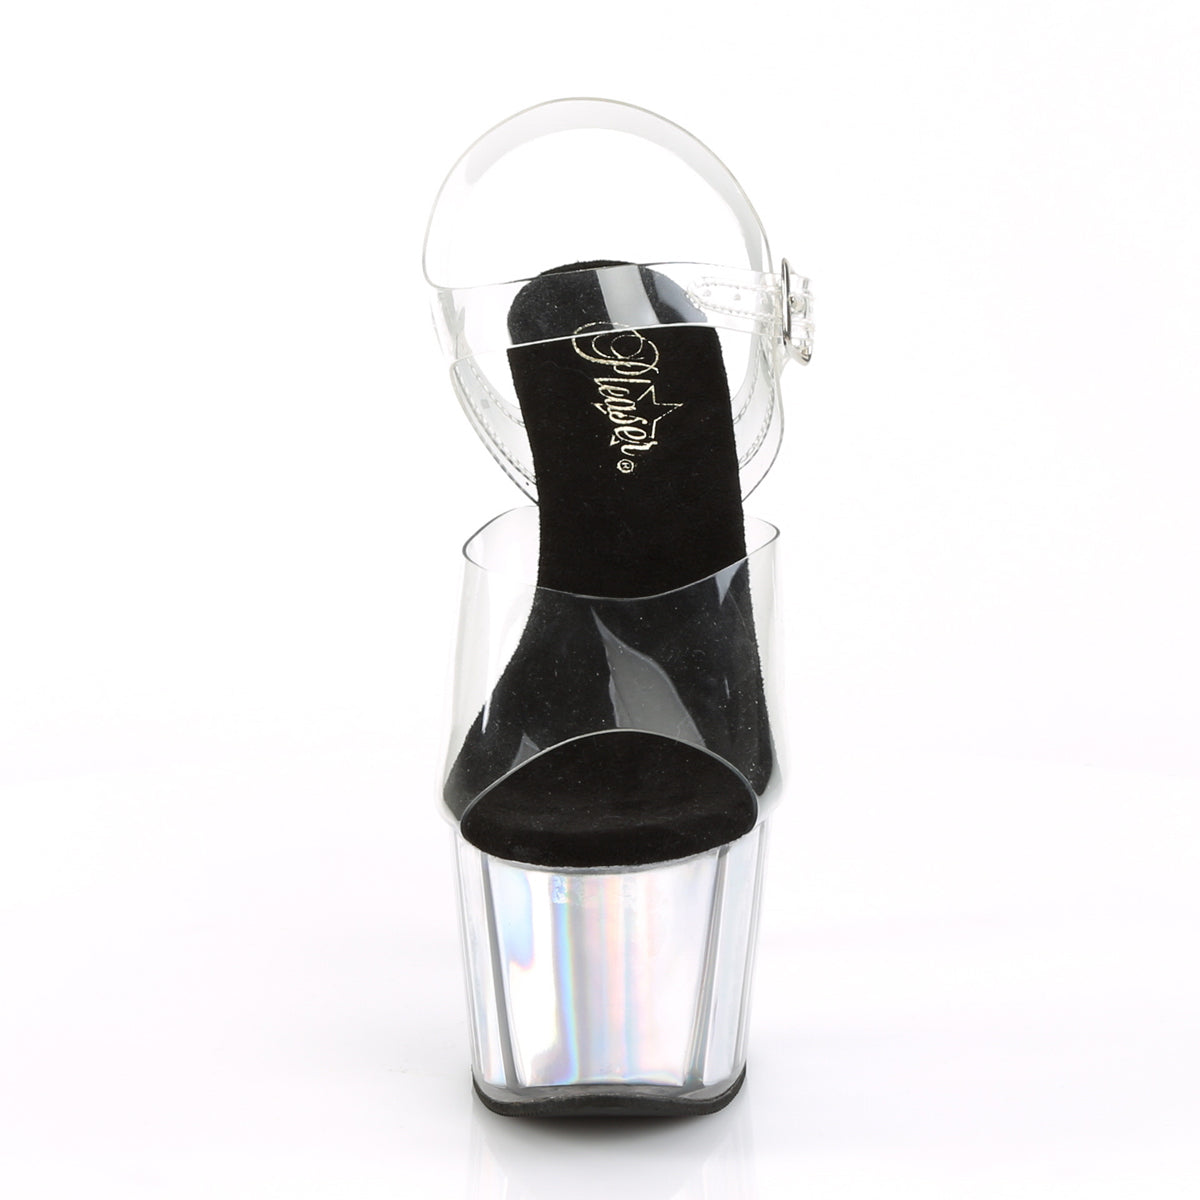 ADORE-708HGI Clear/Silver Hologram Inserts Platform Sandal Pleaser